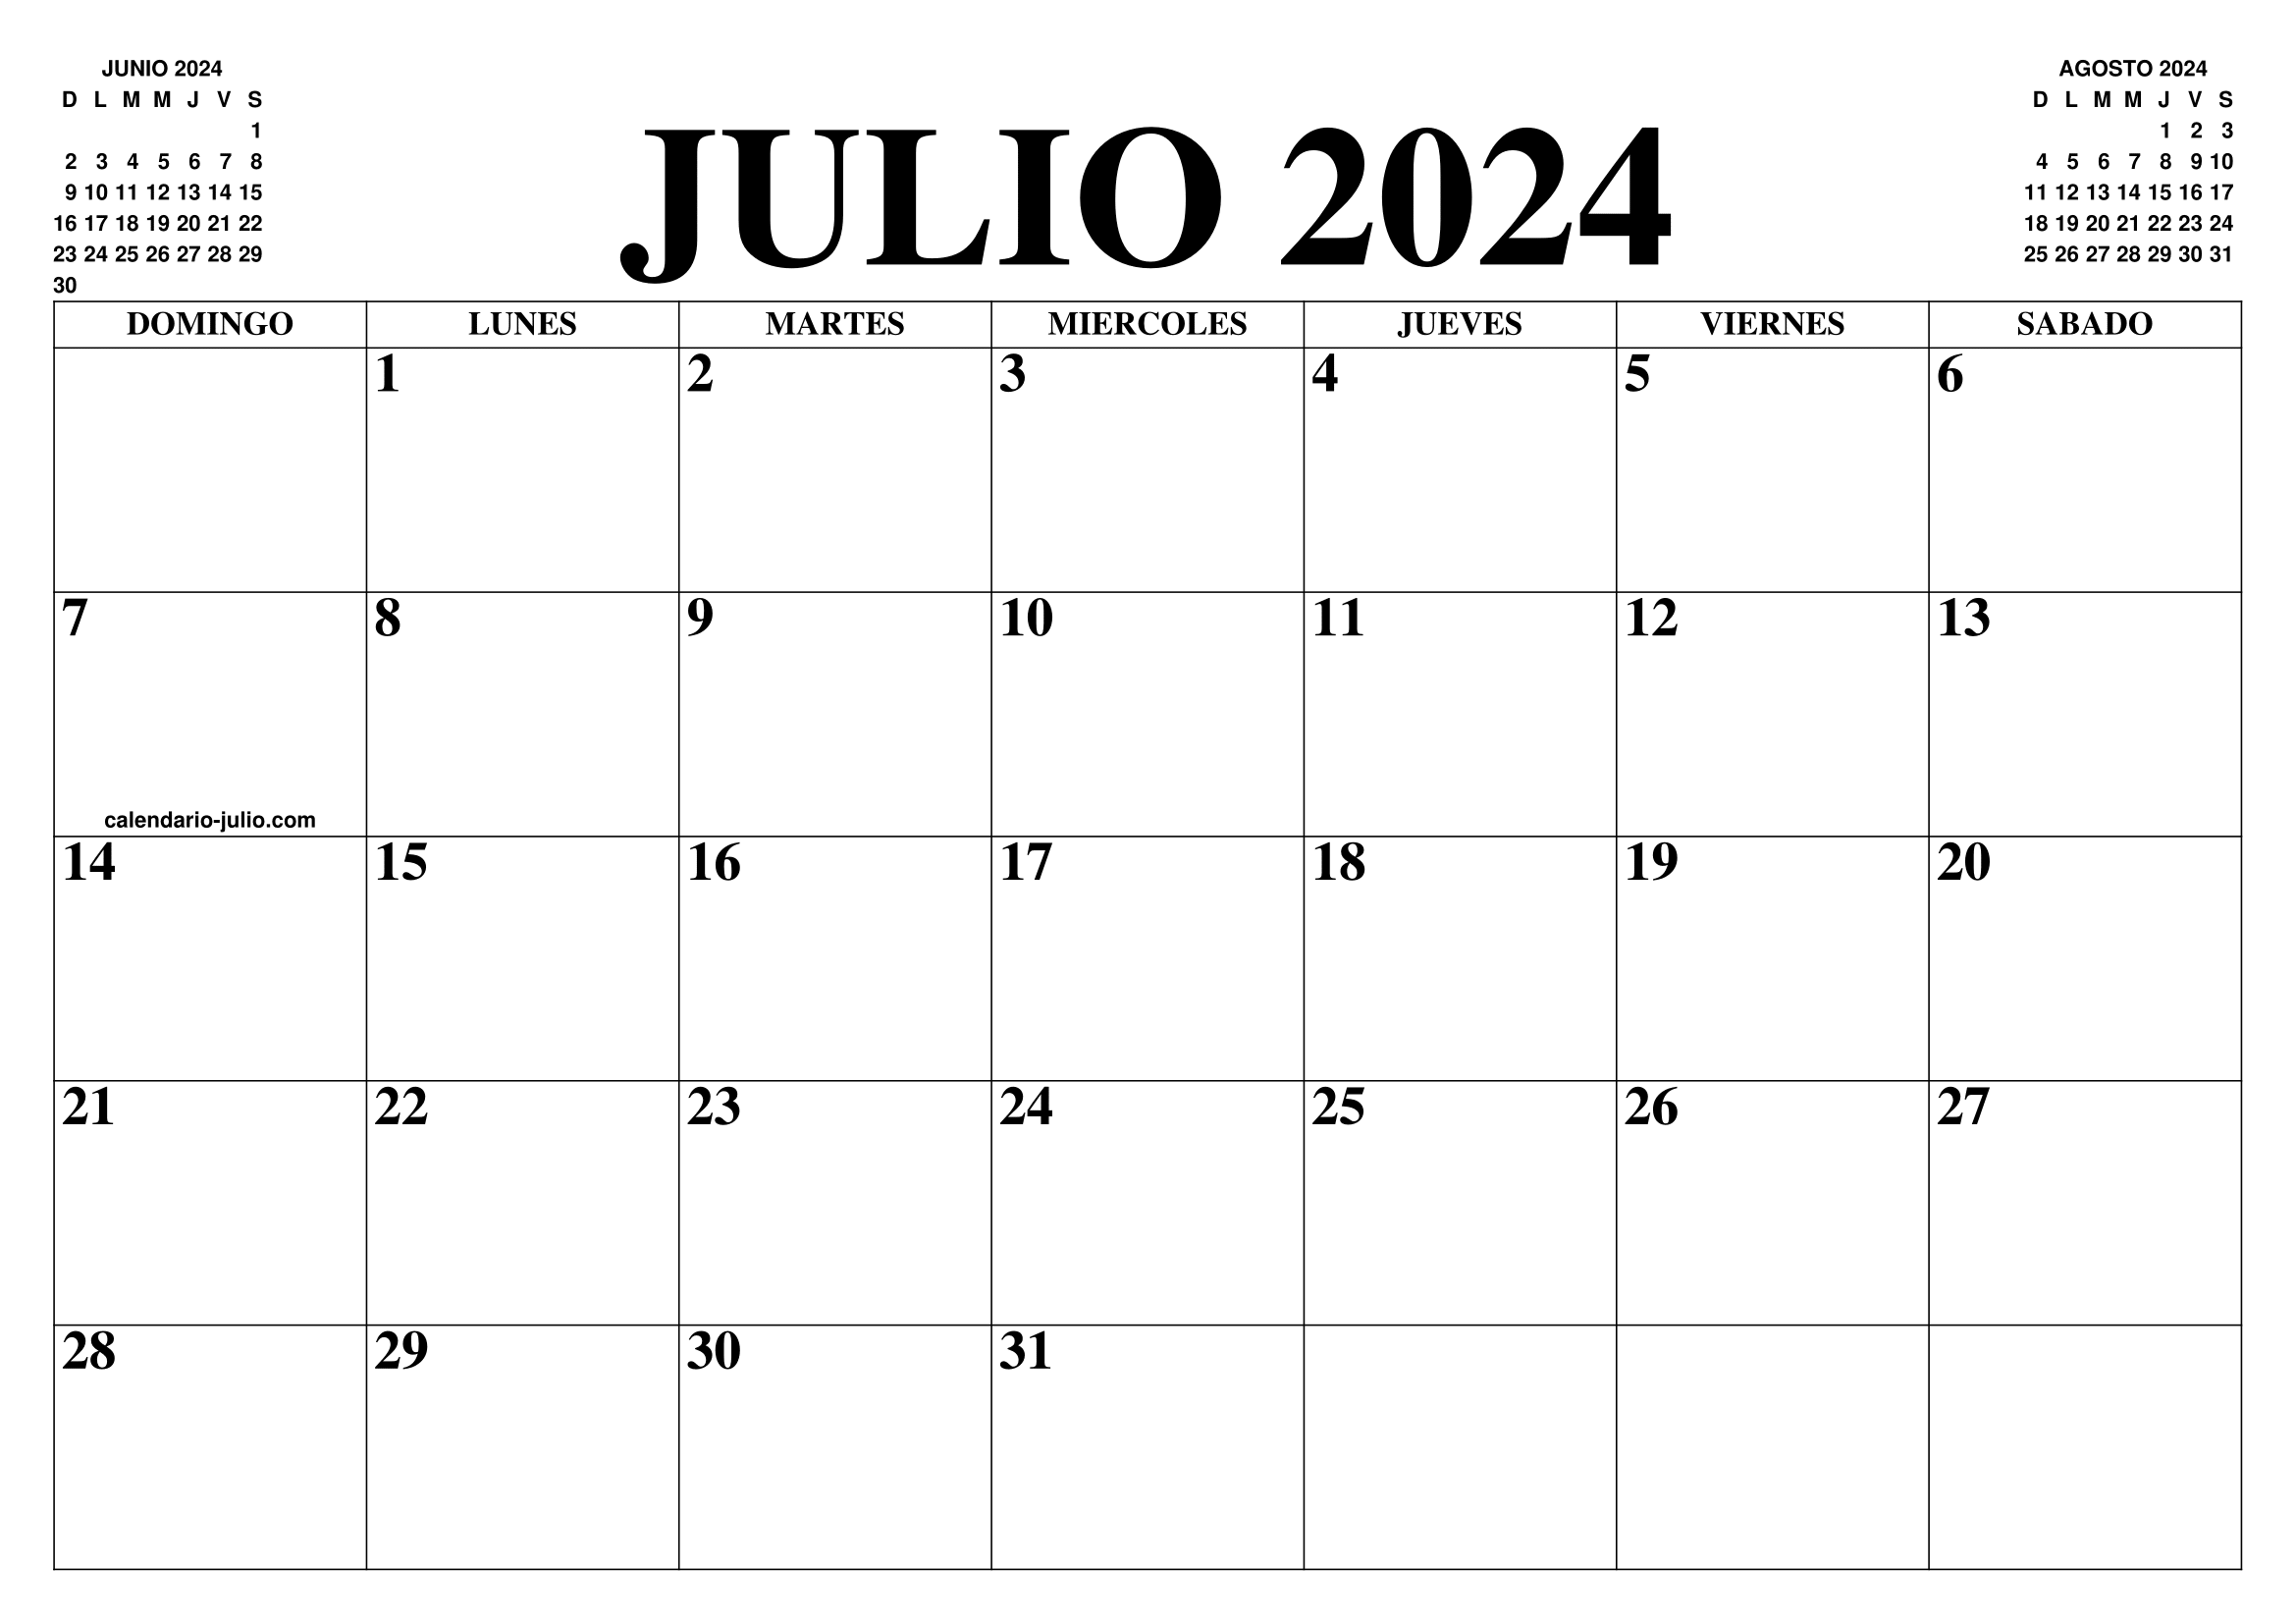 CALENDARIO JULIO 2024 EL CALENDARIO JULIO 2024 PARA IMPRIMIR GRATIS